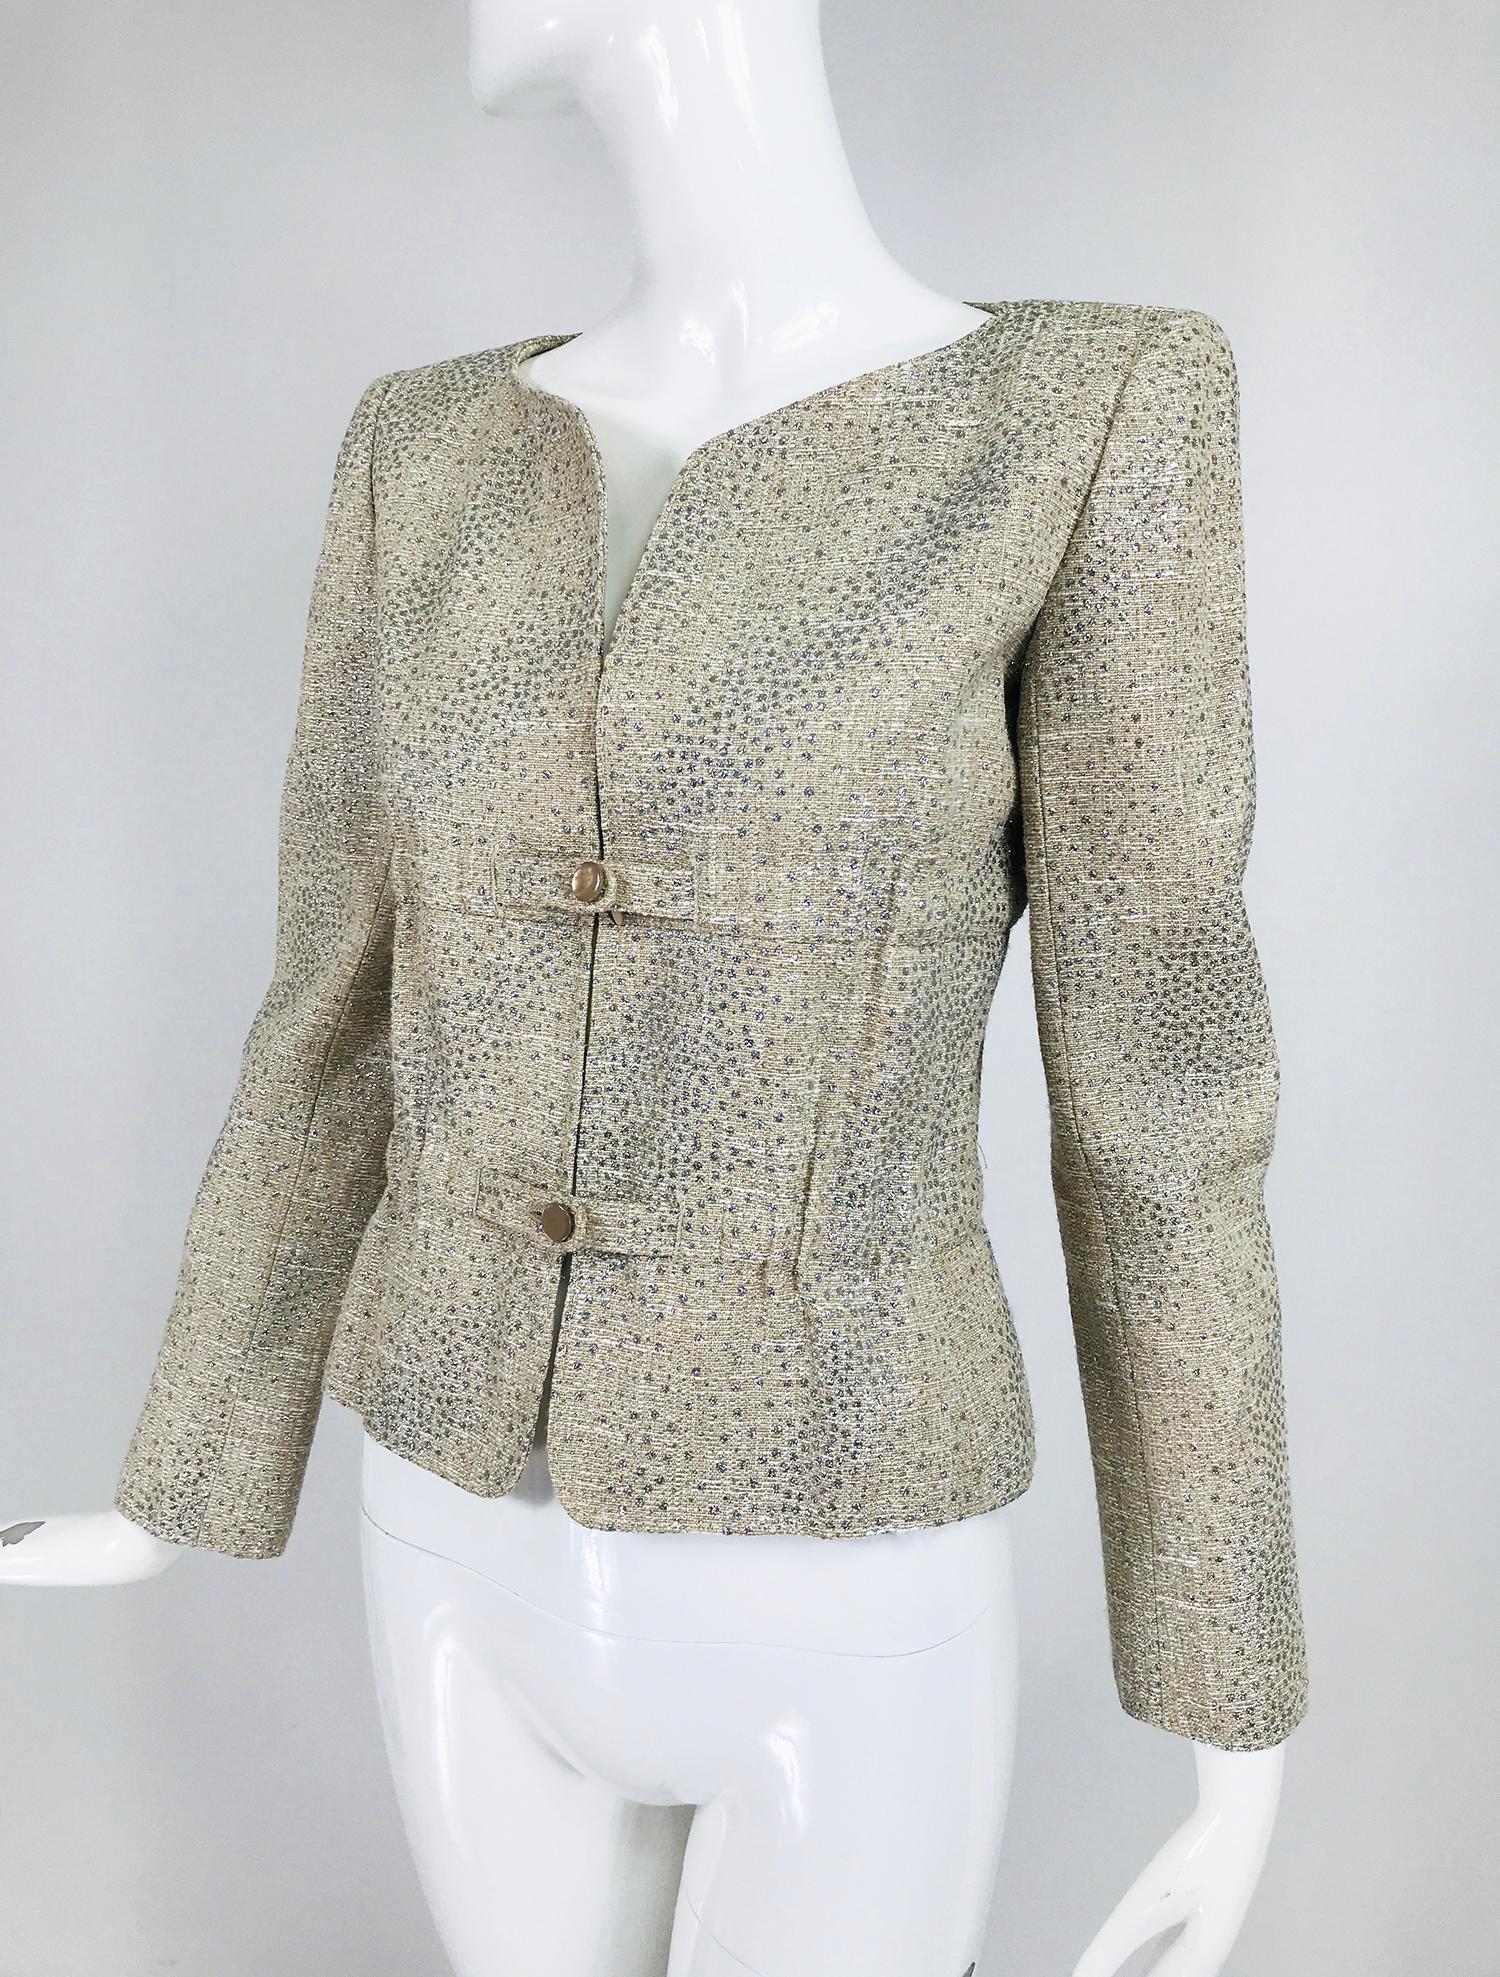 Valentino Glitzer-Silberpunkt-Metallic-Jacke mit geraffter Taille. Diese wunderschöne Jacke ist silbergrau oder silbertaupe, je nach Licht, Slub-Webstoff mit winzigen und kleinen glitzernden Silberpunkten bestreut. Prinzessinnennaht, offener